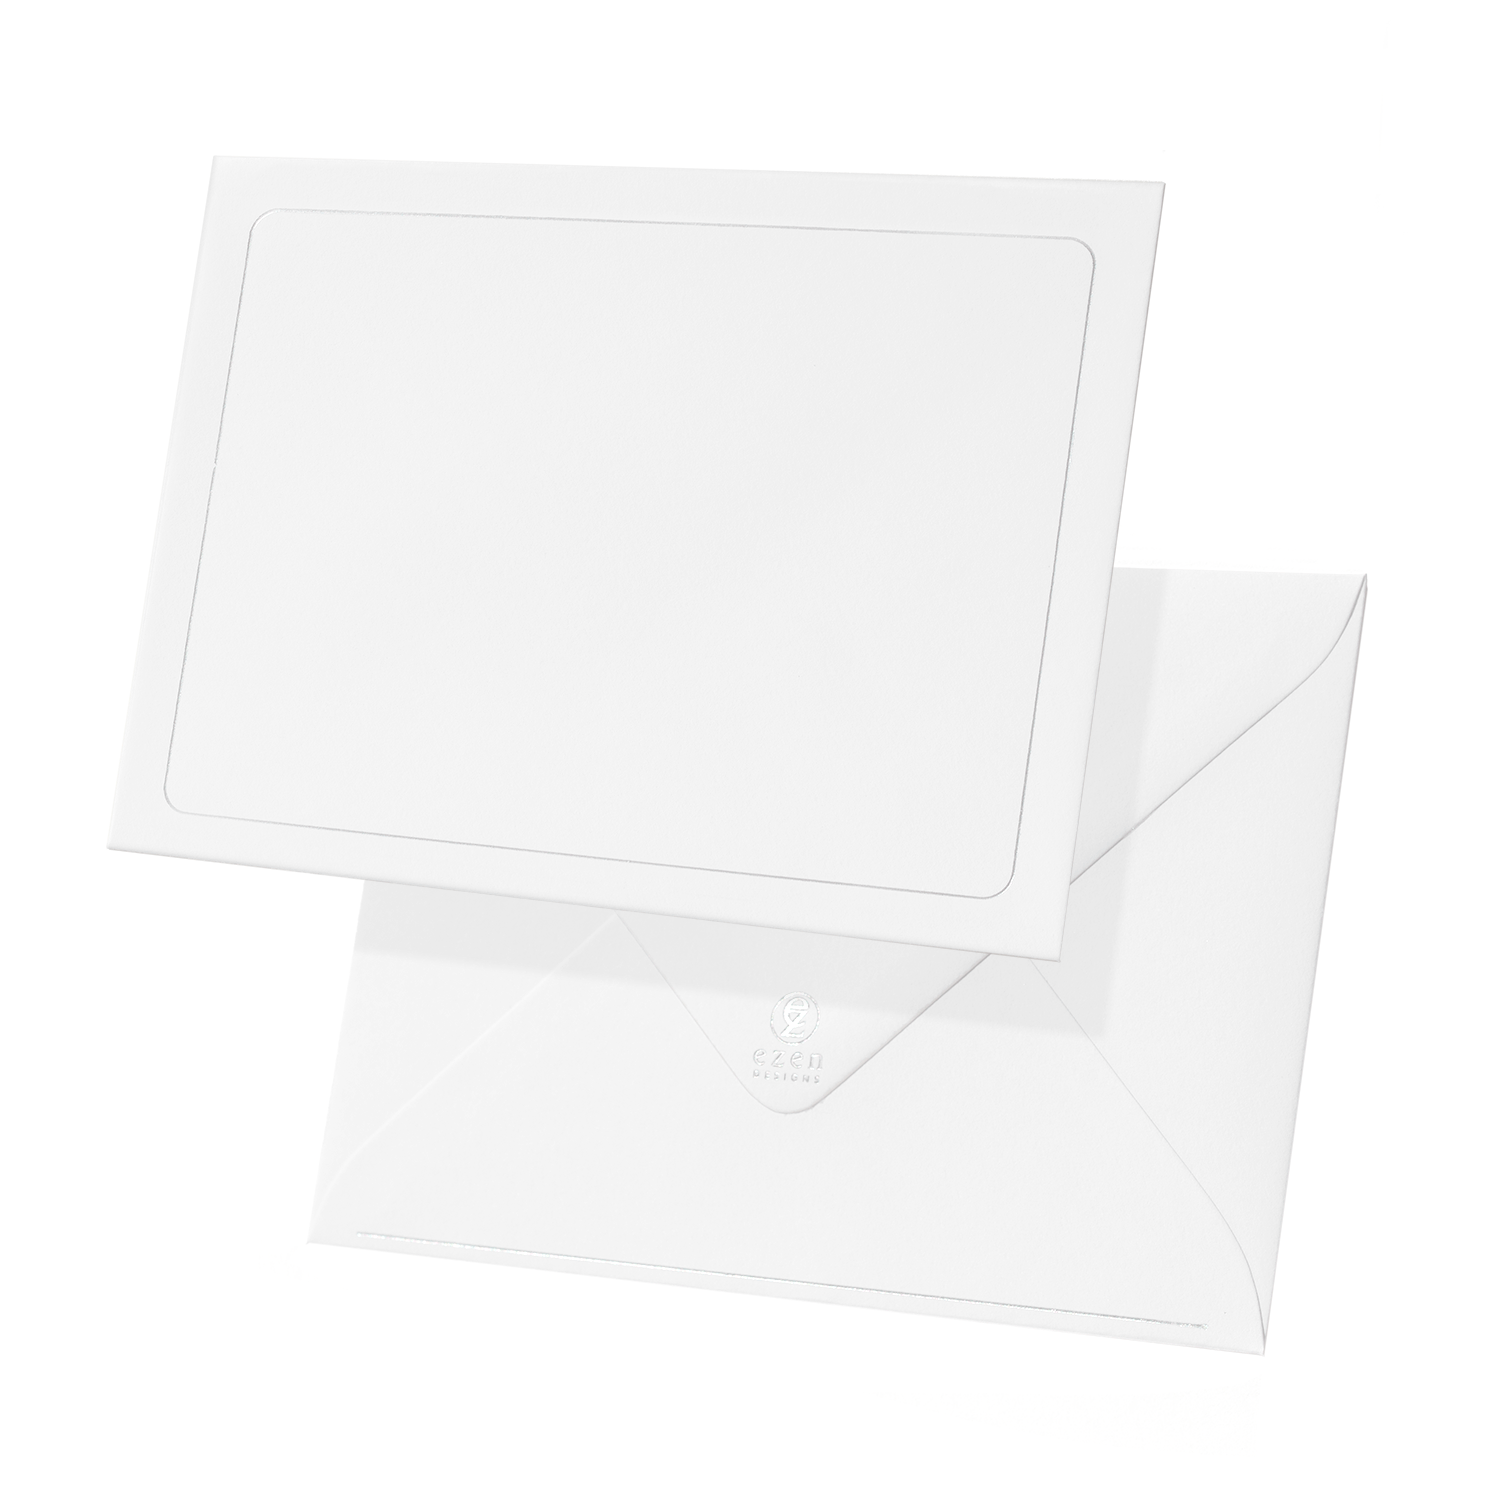 WHITE PEACOCKS: Pattern Greeting Card